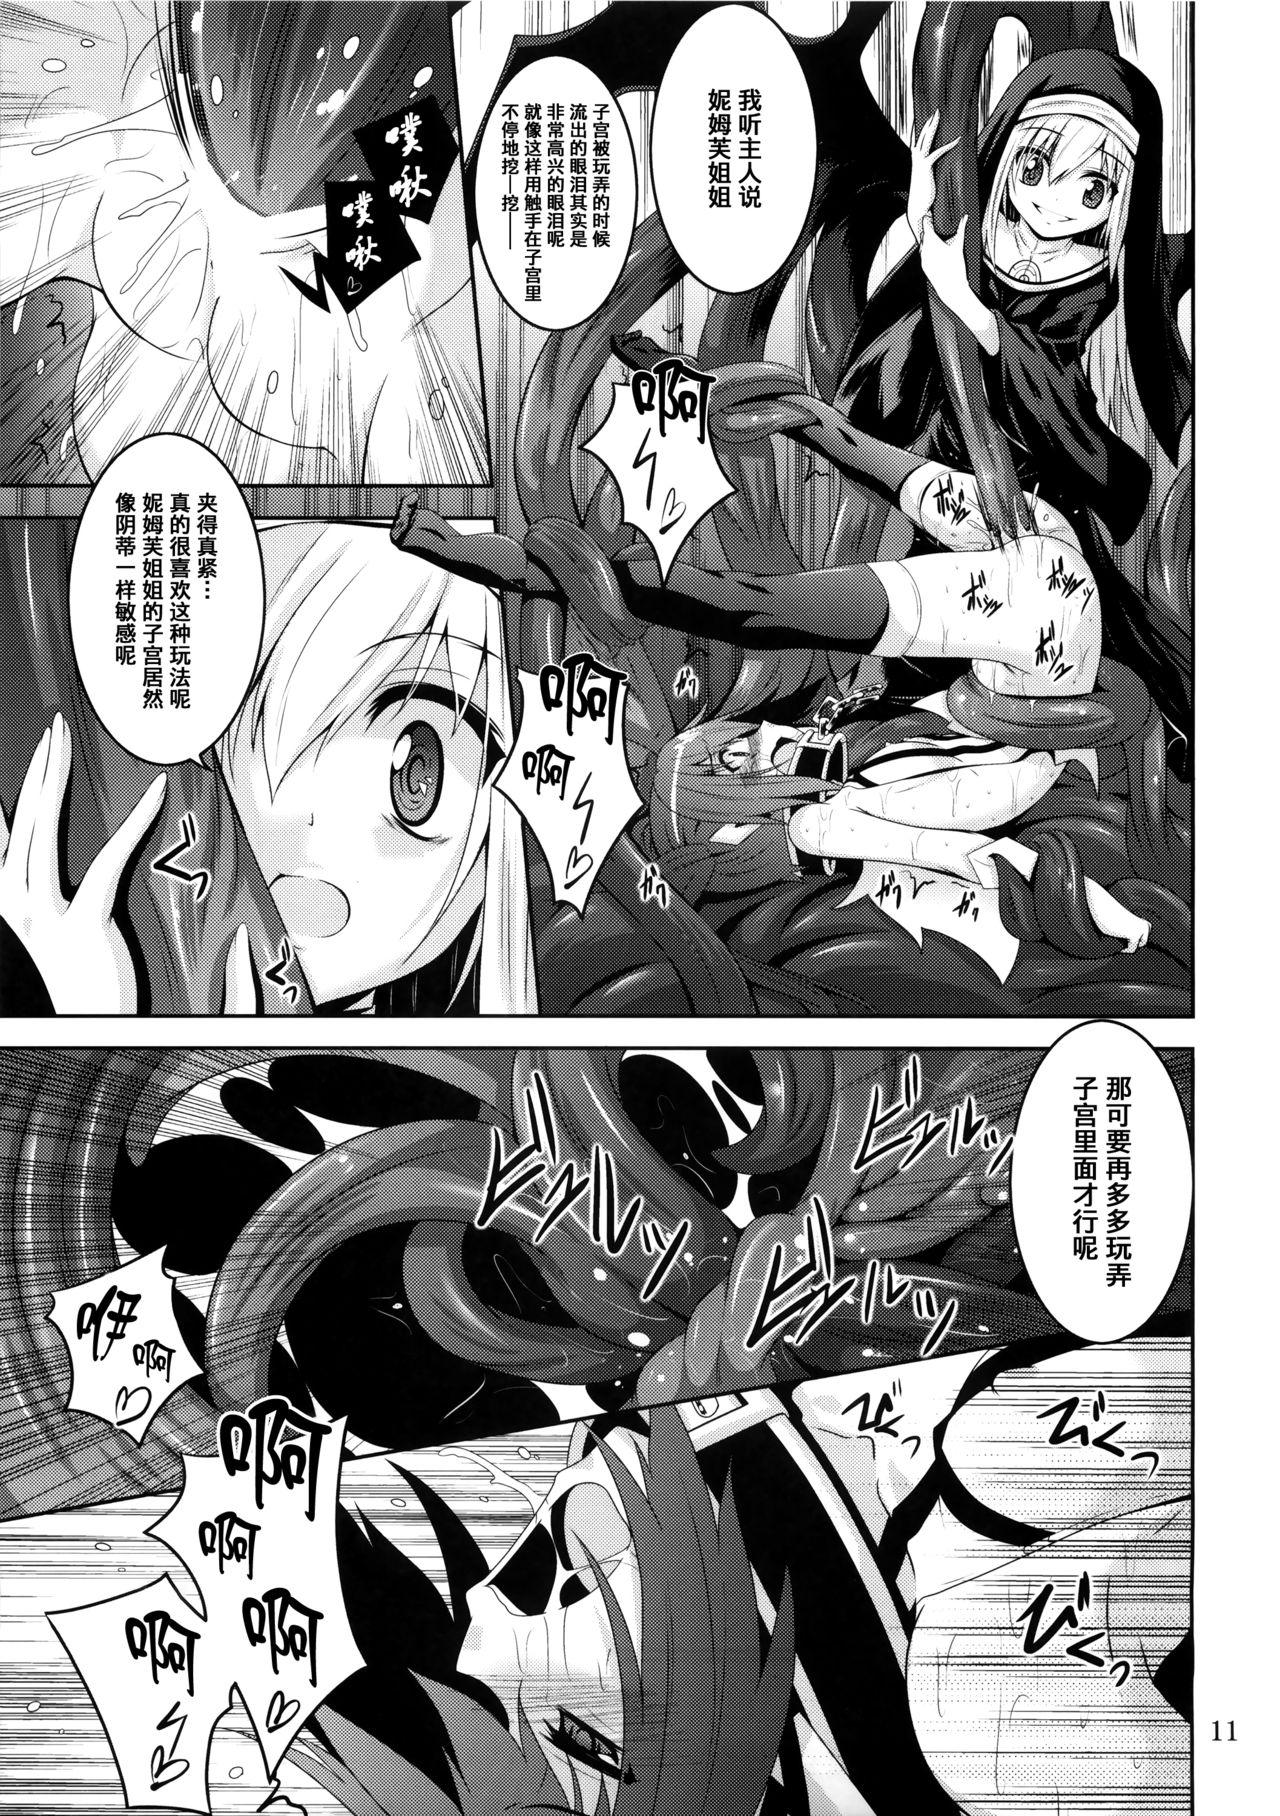 Penetration β3 - Sora no otoshimono Classy - Page 10